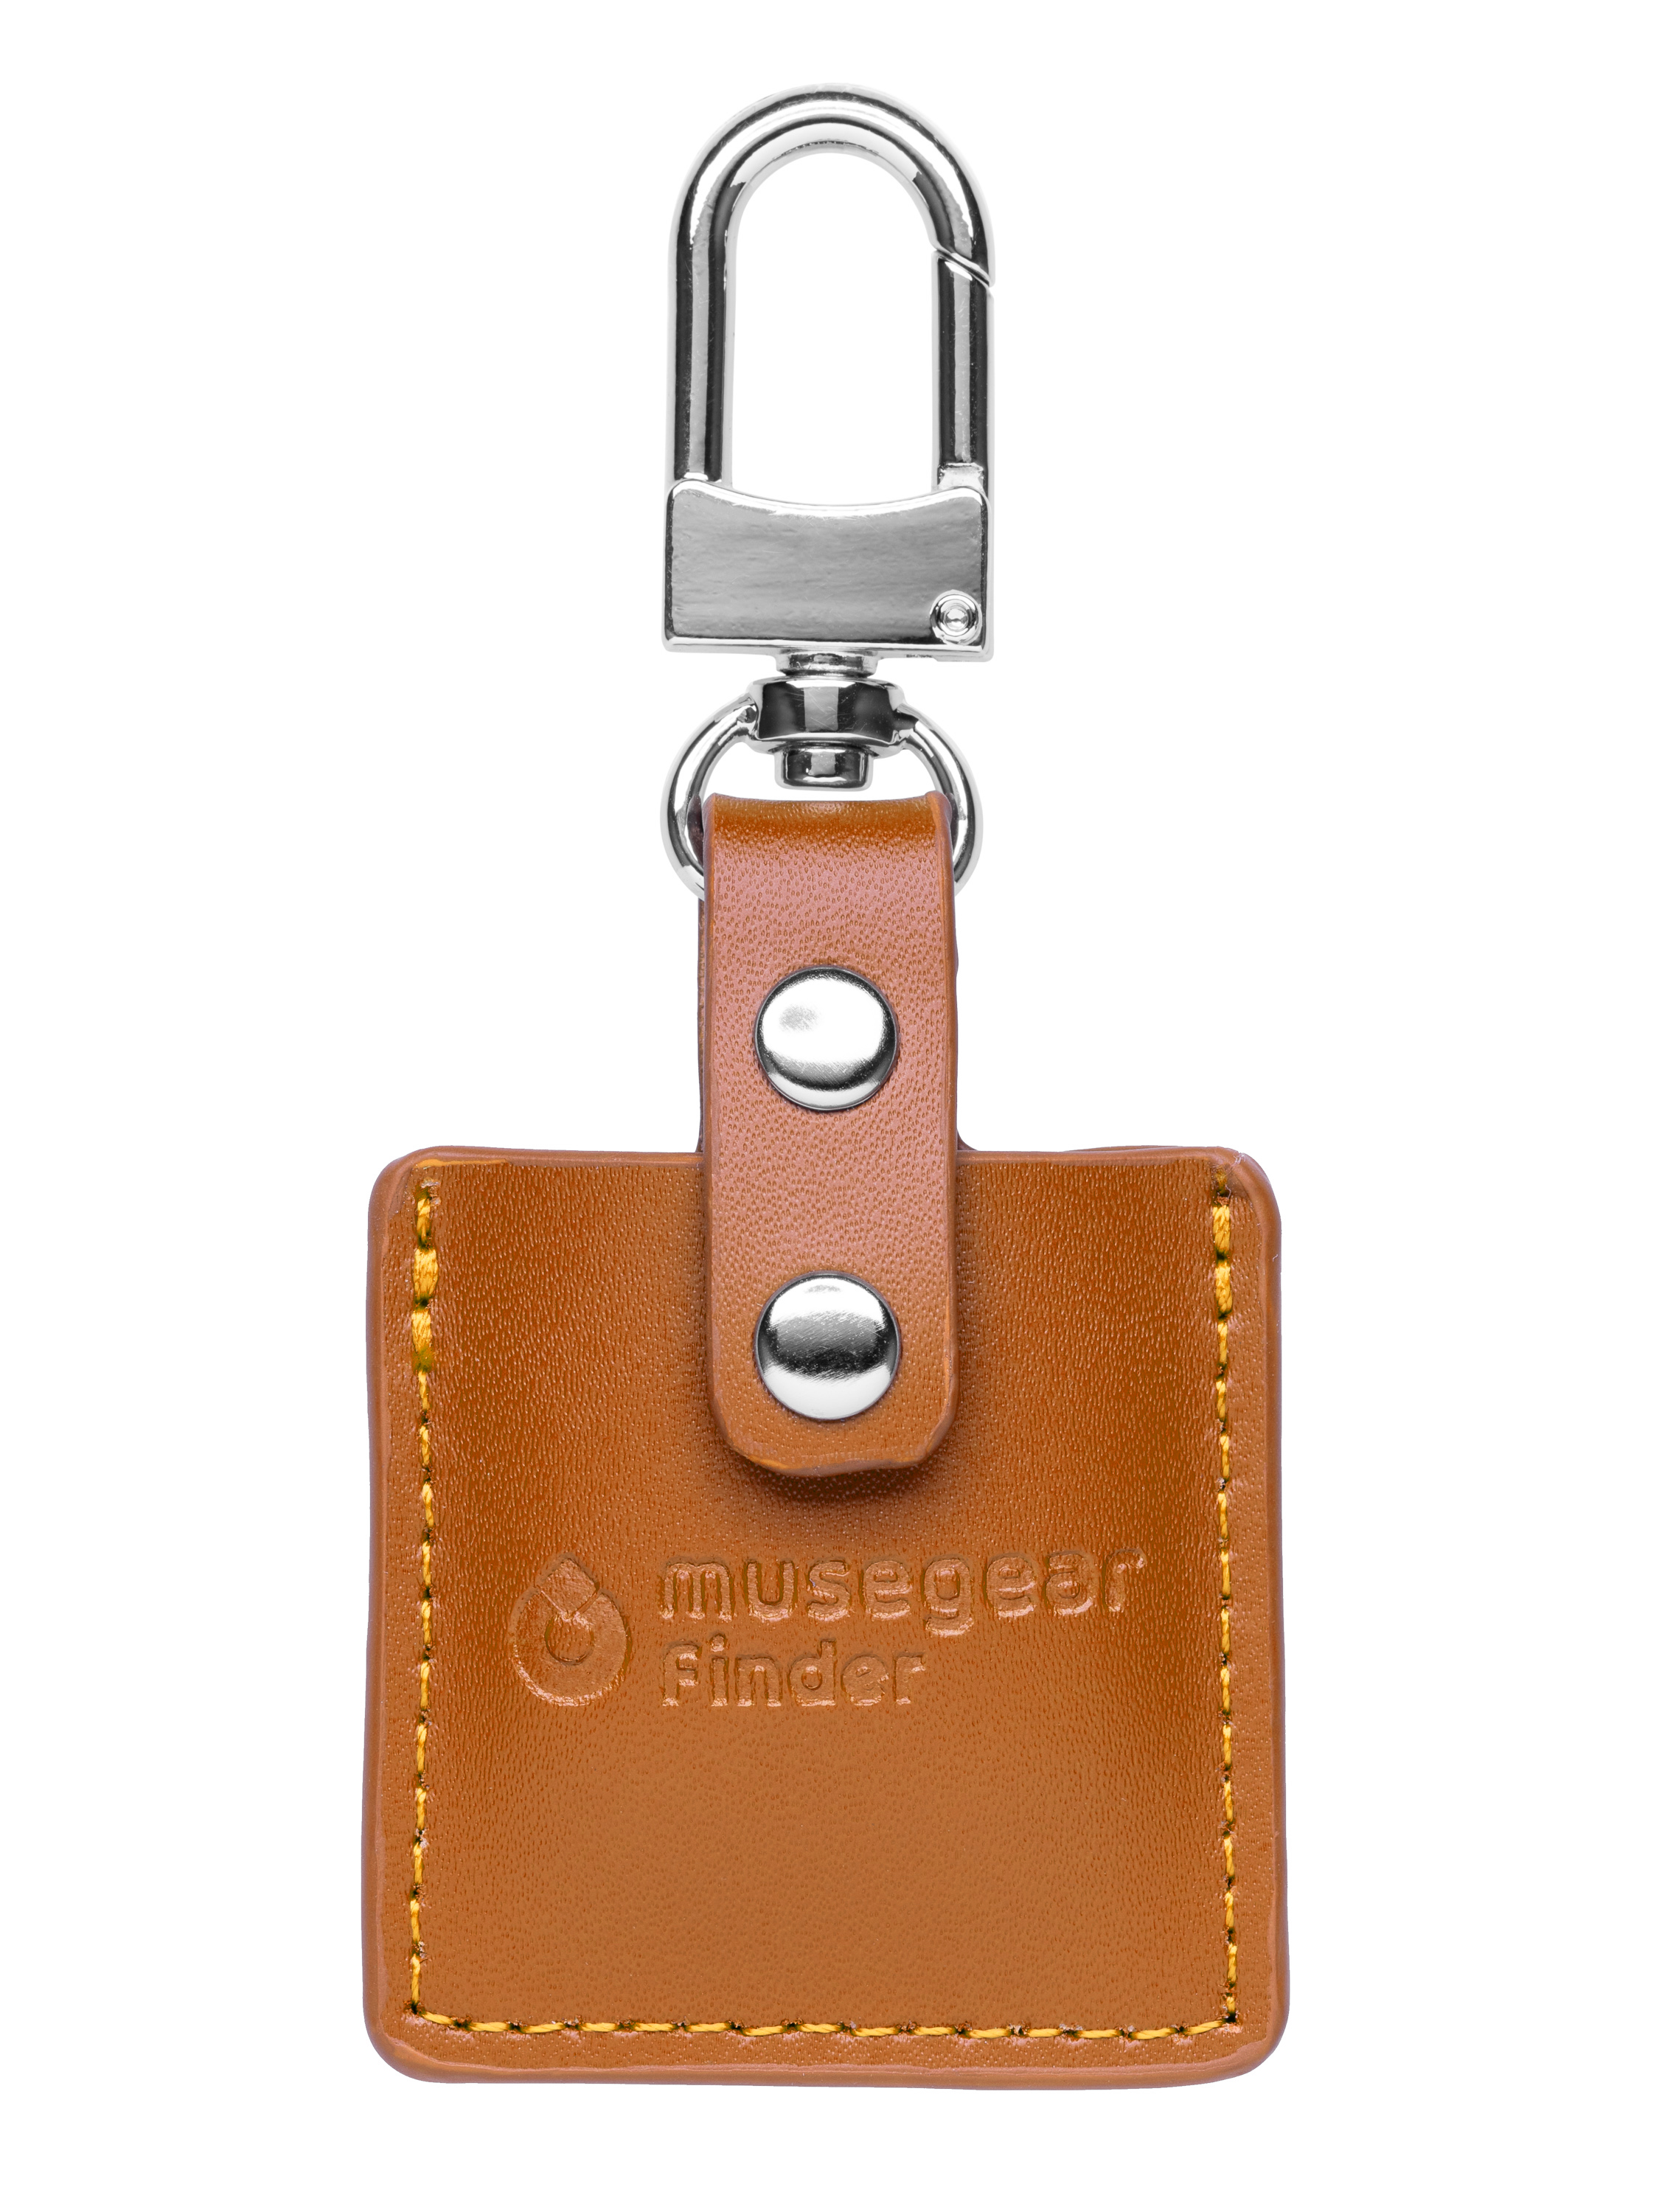 MUSEGEAR Schlüsselfinder mit Bluetooth App Schlüsselfinder Bluetooth aus Deutschland